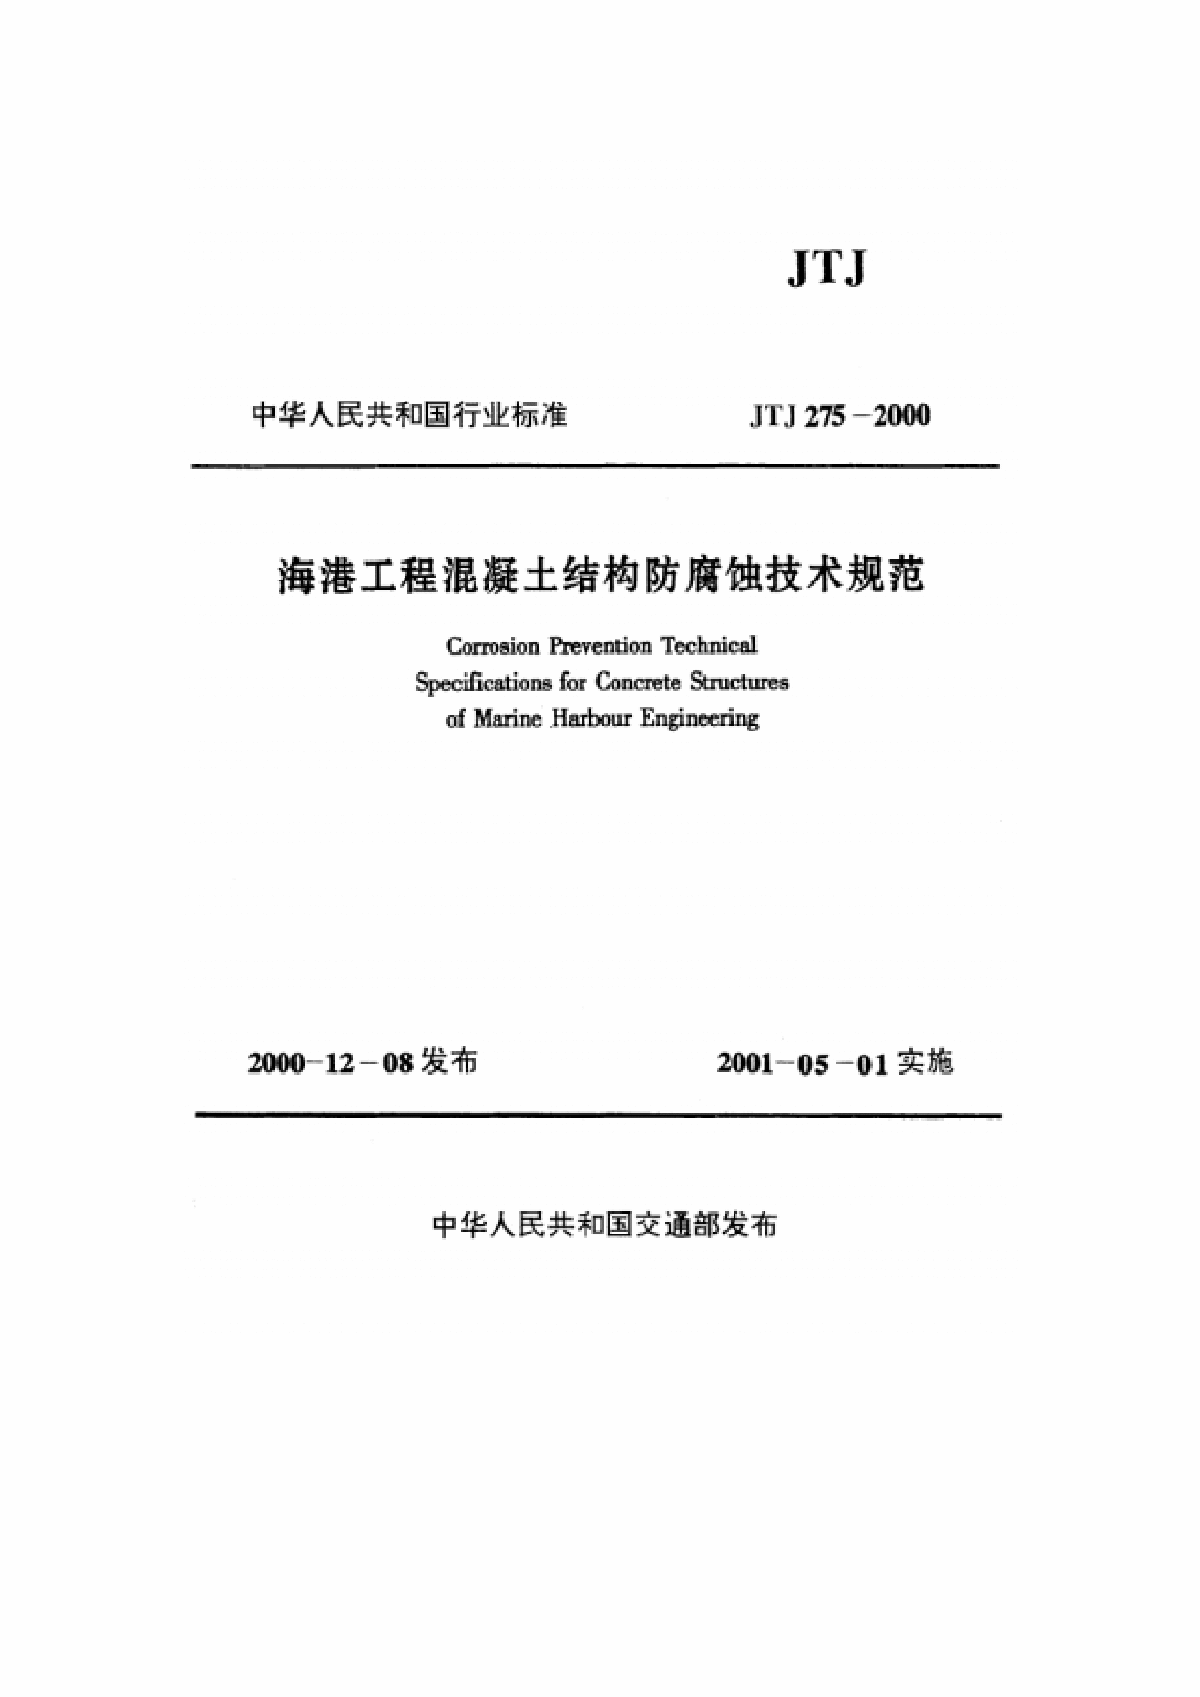 《海港工程混凝土结构防腐蚀技术规范》(JTJ275-2000)